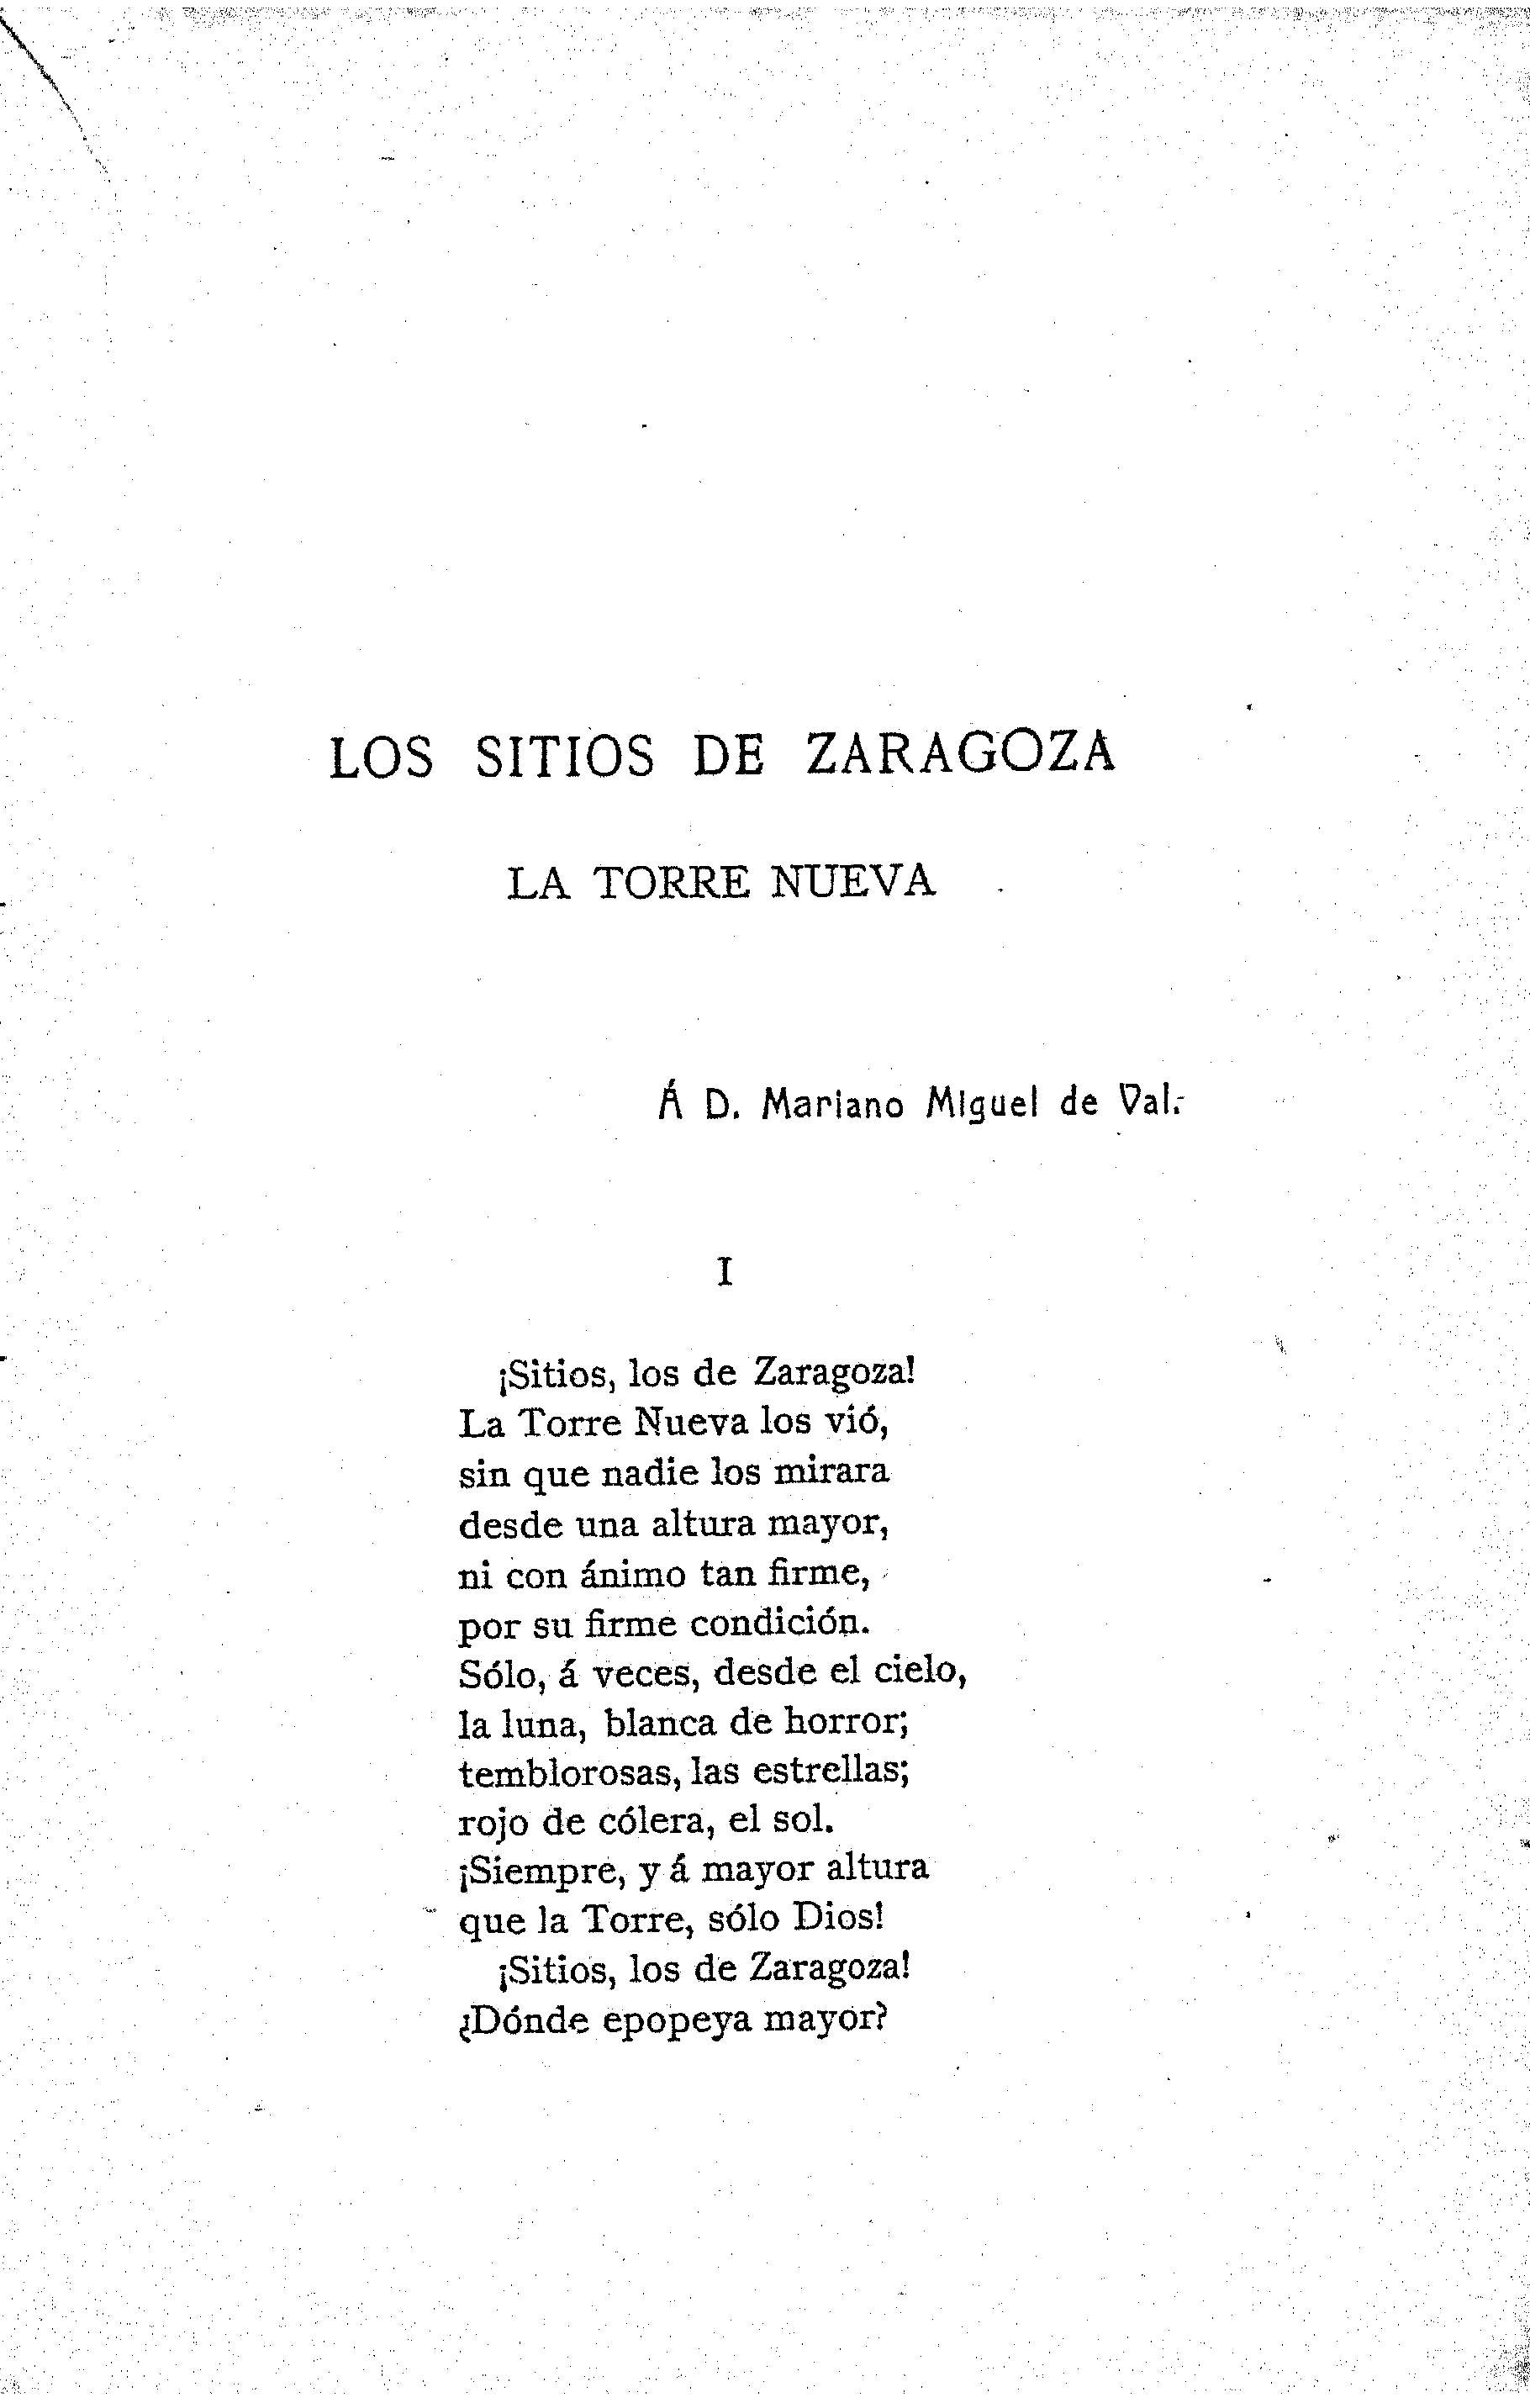 Los sitios de Zaragoza. La Torre Nueva